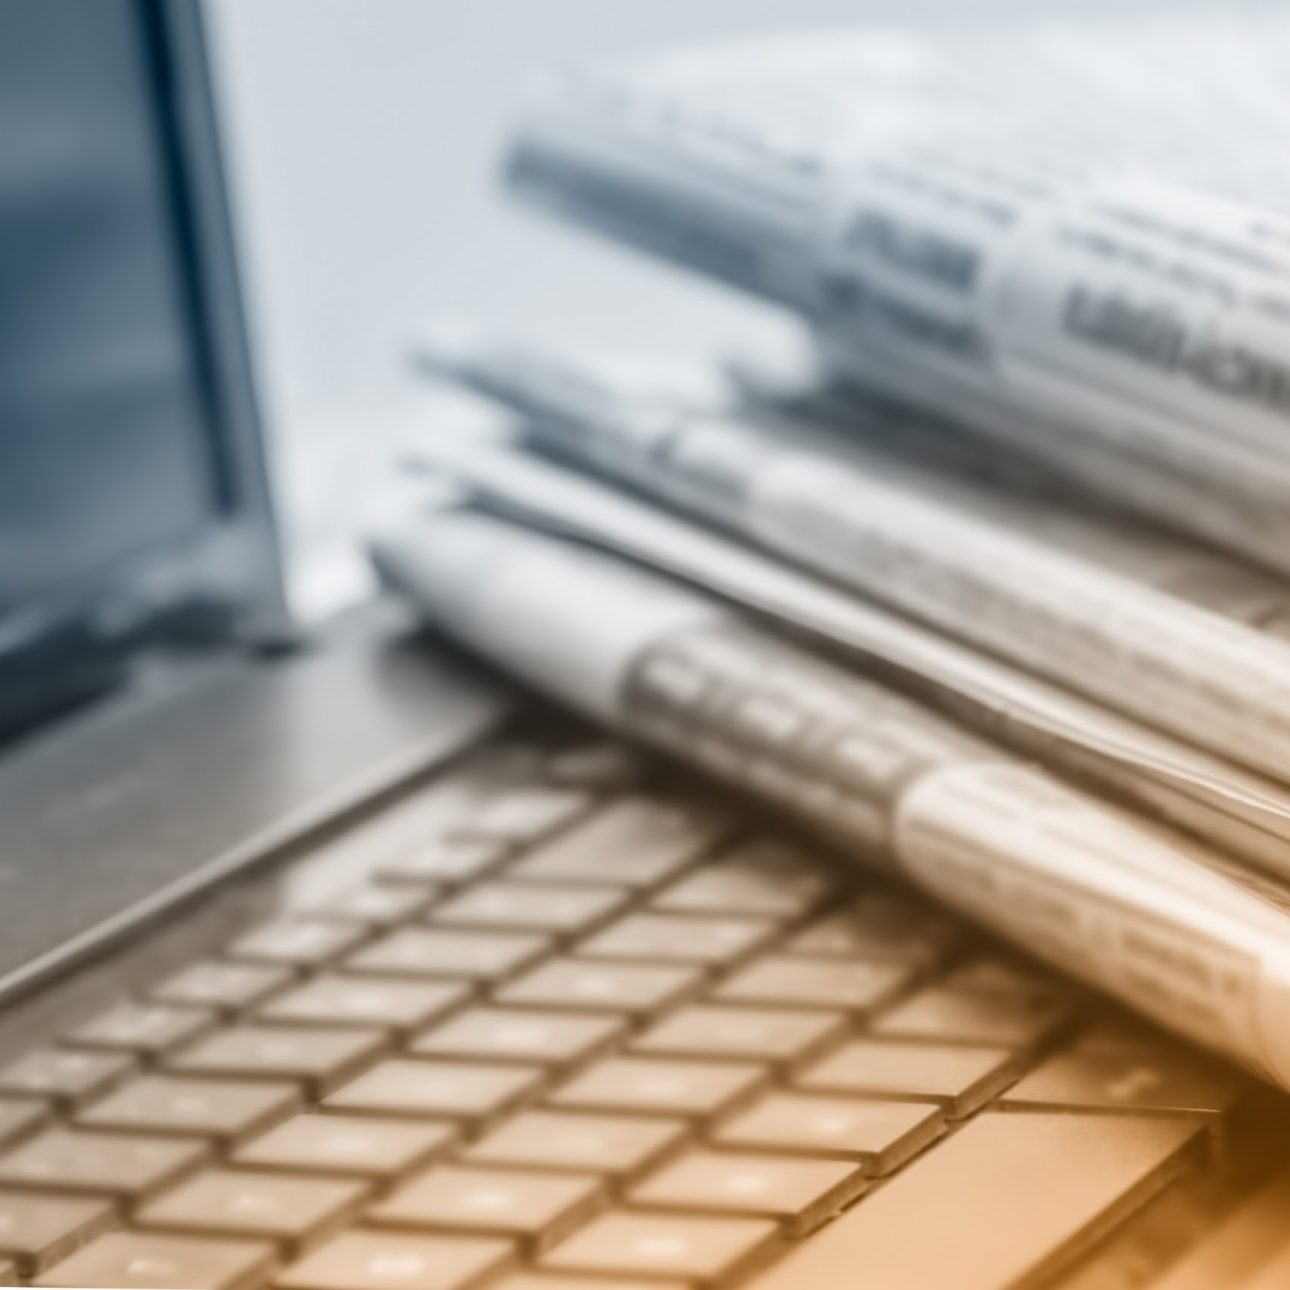 image de journaux posés sur un ordinateur pour représenter le sourcing dans de nombreuses sources presse et digitales